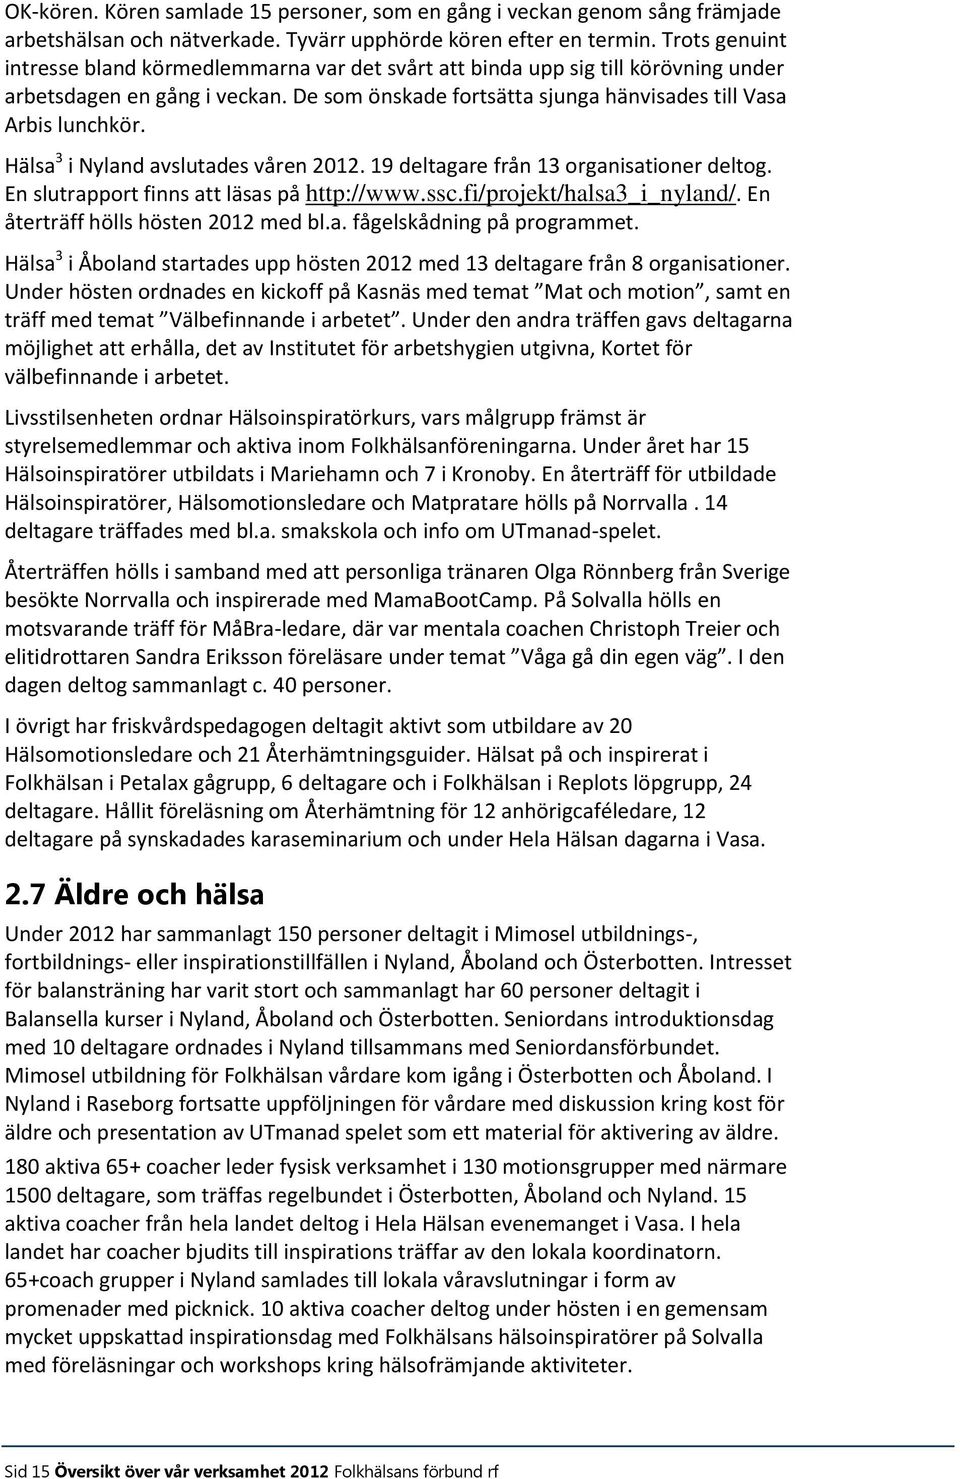 Hälsa 3 i Nyland avslutades våren 2012. 19 deltagare från 13 organisationer deltog. En slutrapport finns att läsas på http://www.ssc.fi/projekt/halsa3_i_nyland/. En återträff hölls hösten 2012 med bl.